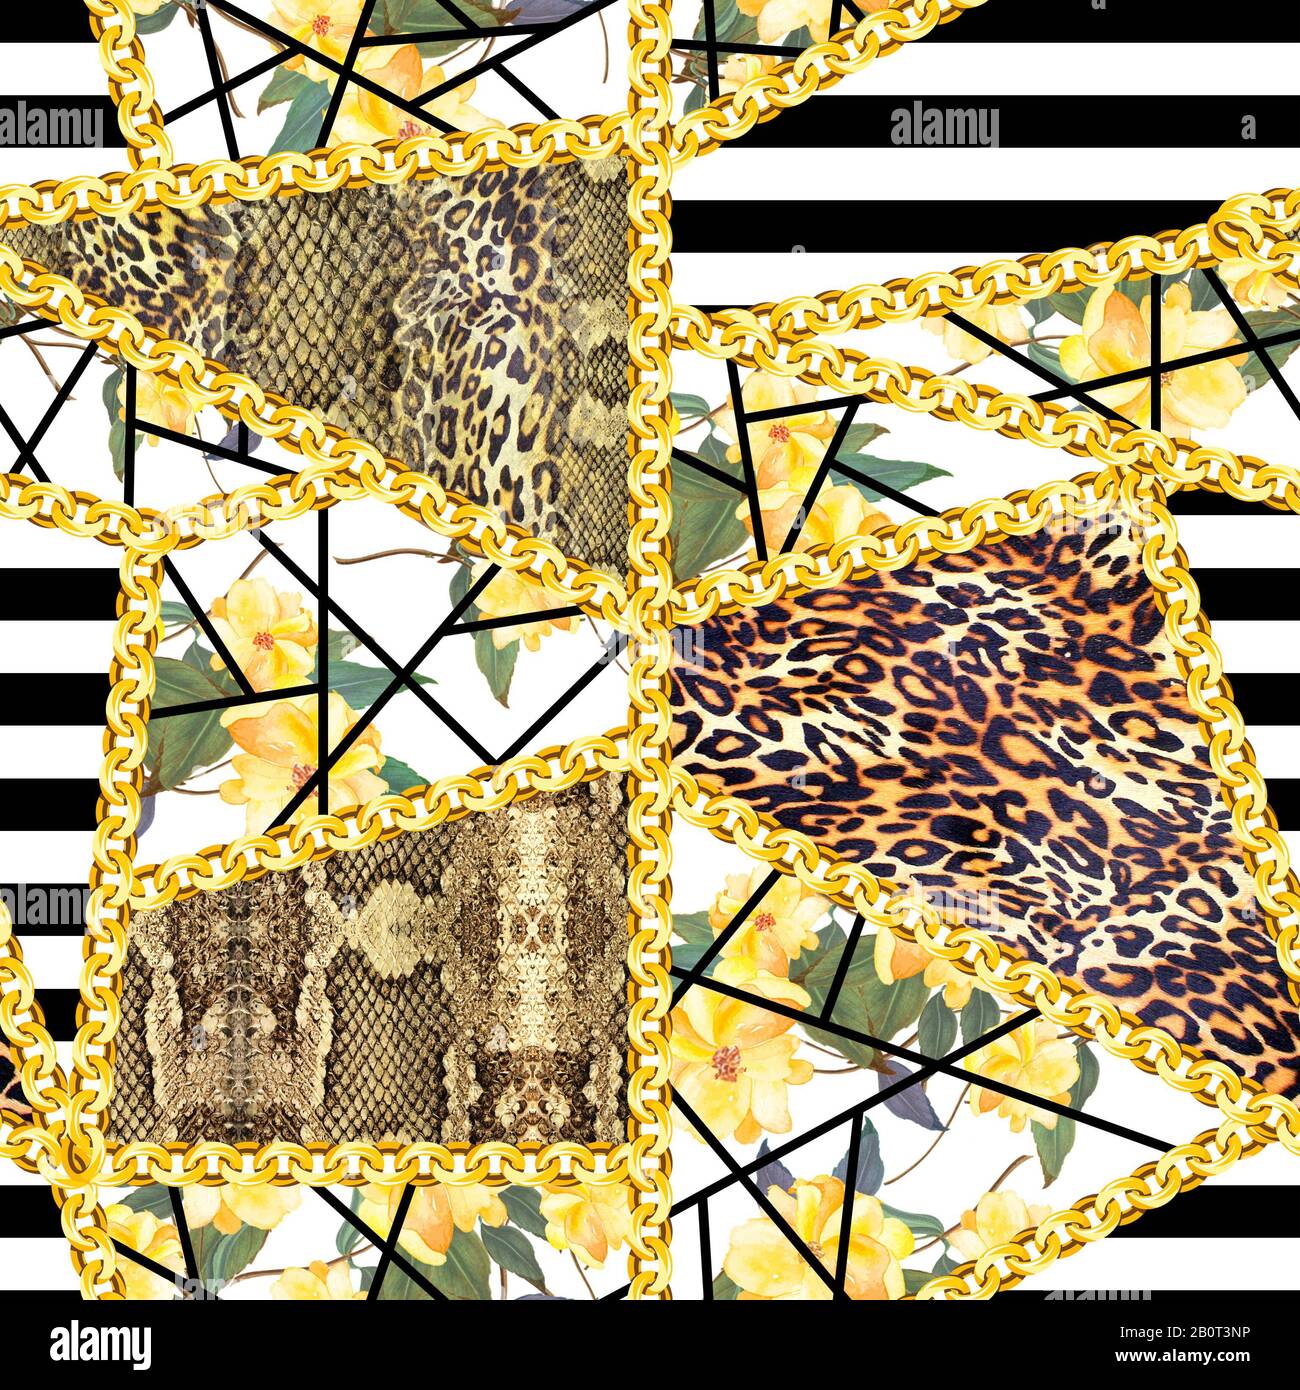 Tiere Hauttextur mit gelben Blumen und goldenen Ketten auf schwarzem Streifen Hintergrund. Nahtloses Modemuster. - Abbildung Stockfoto